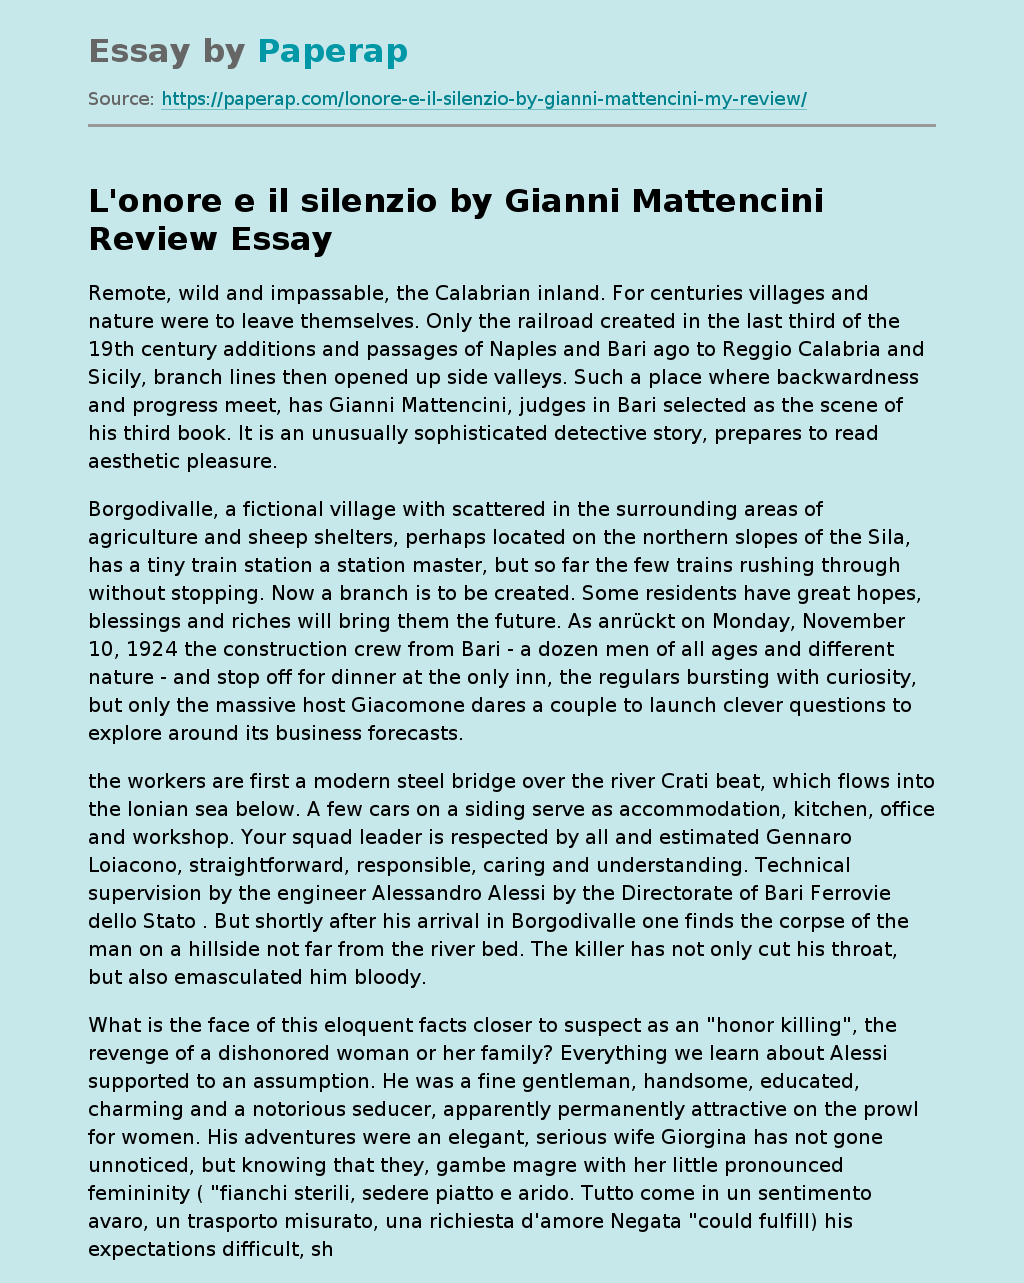 "L'onore e il silenzio" by Gianni Mattencini